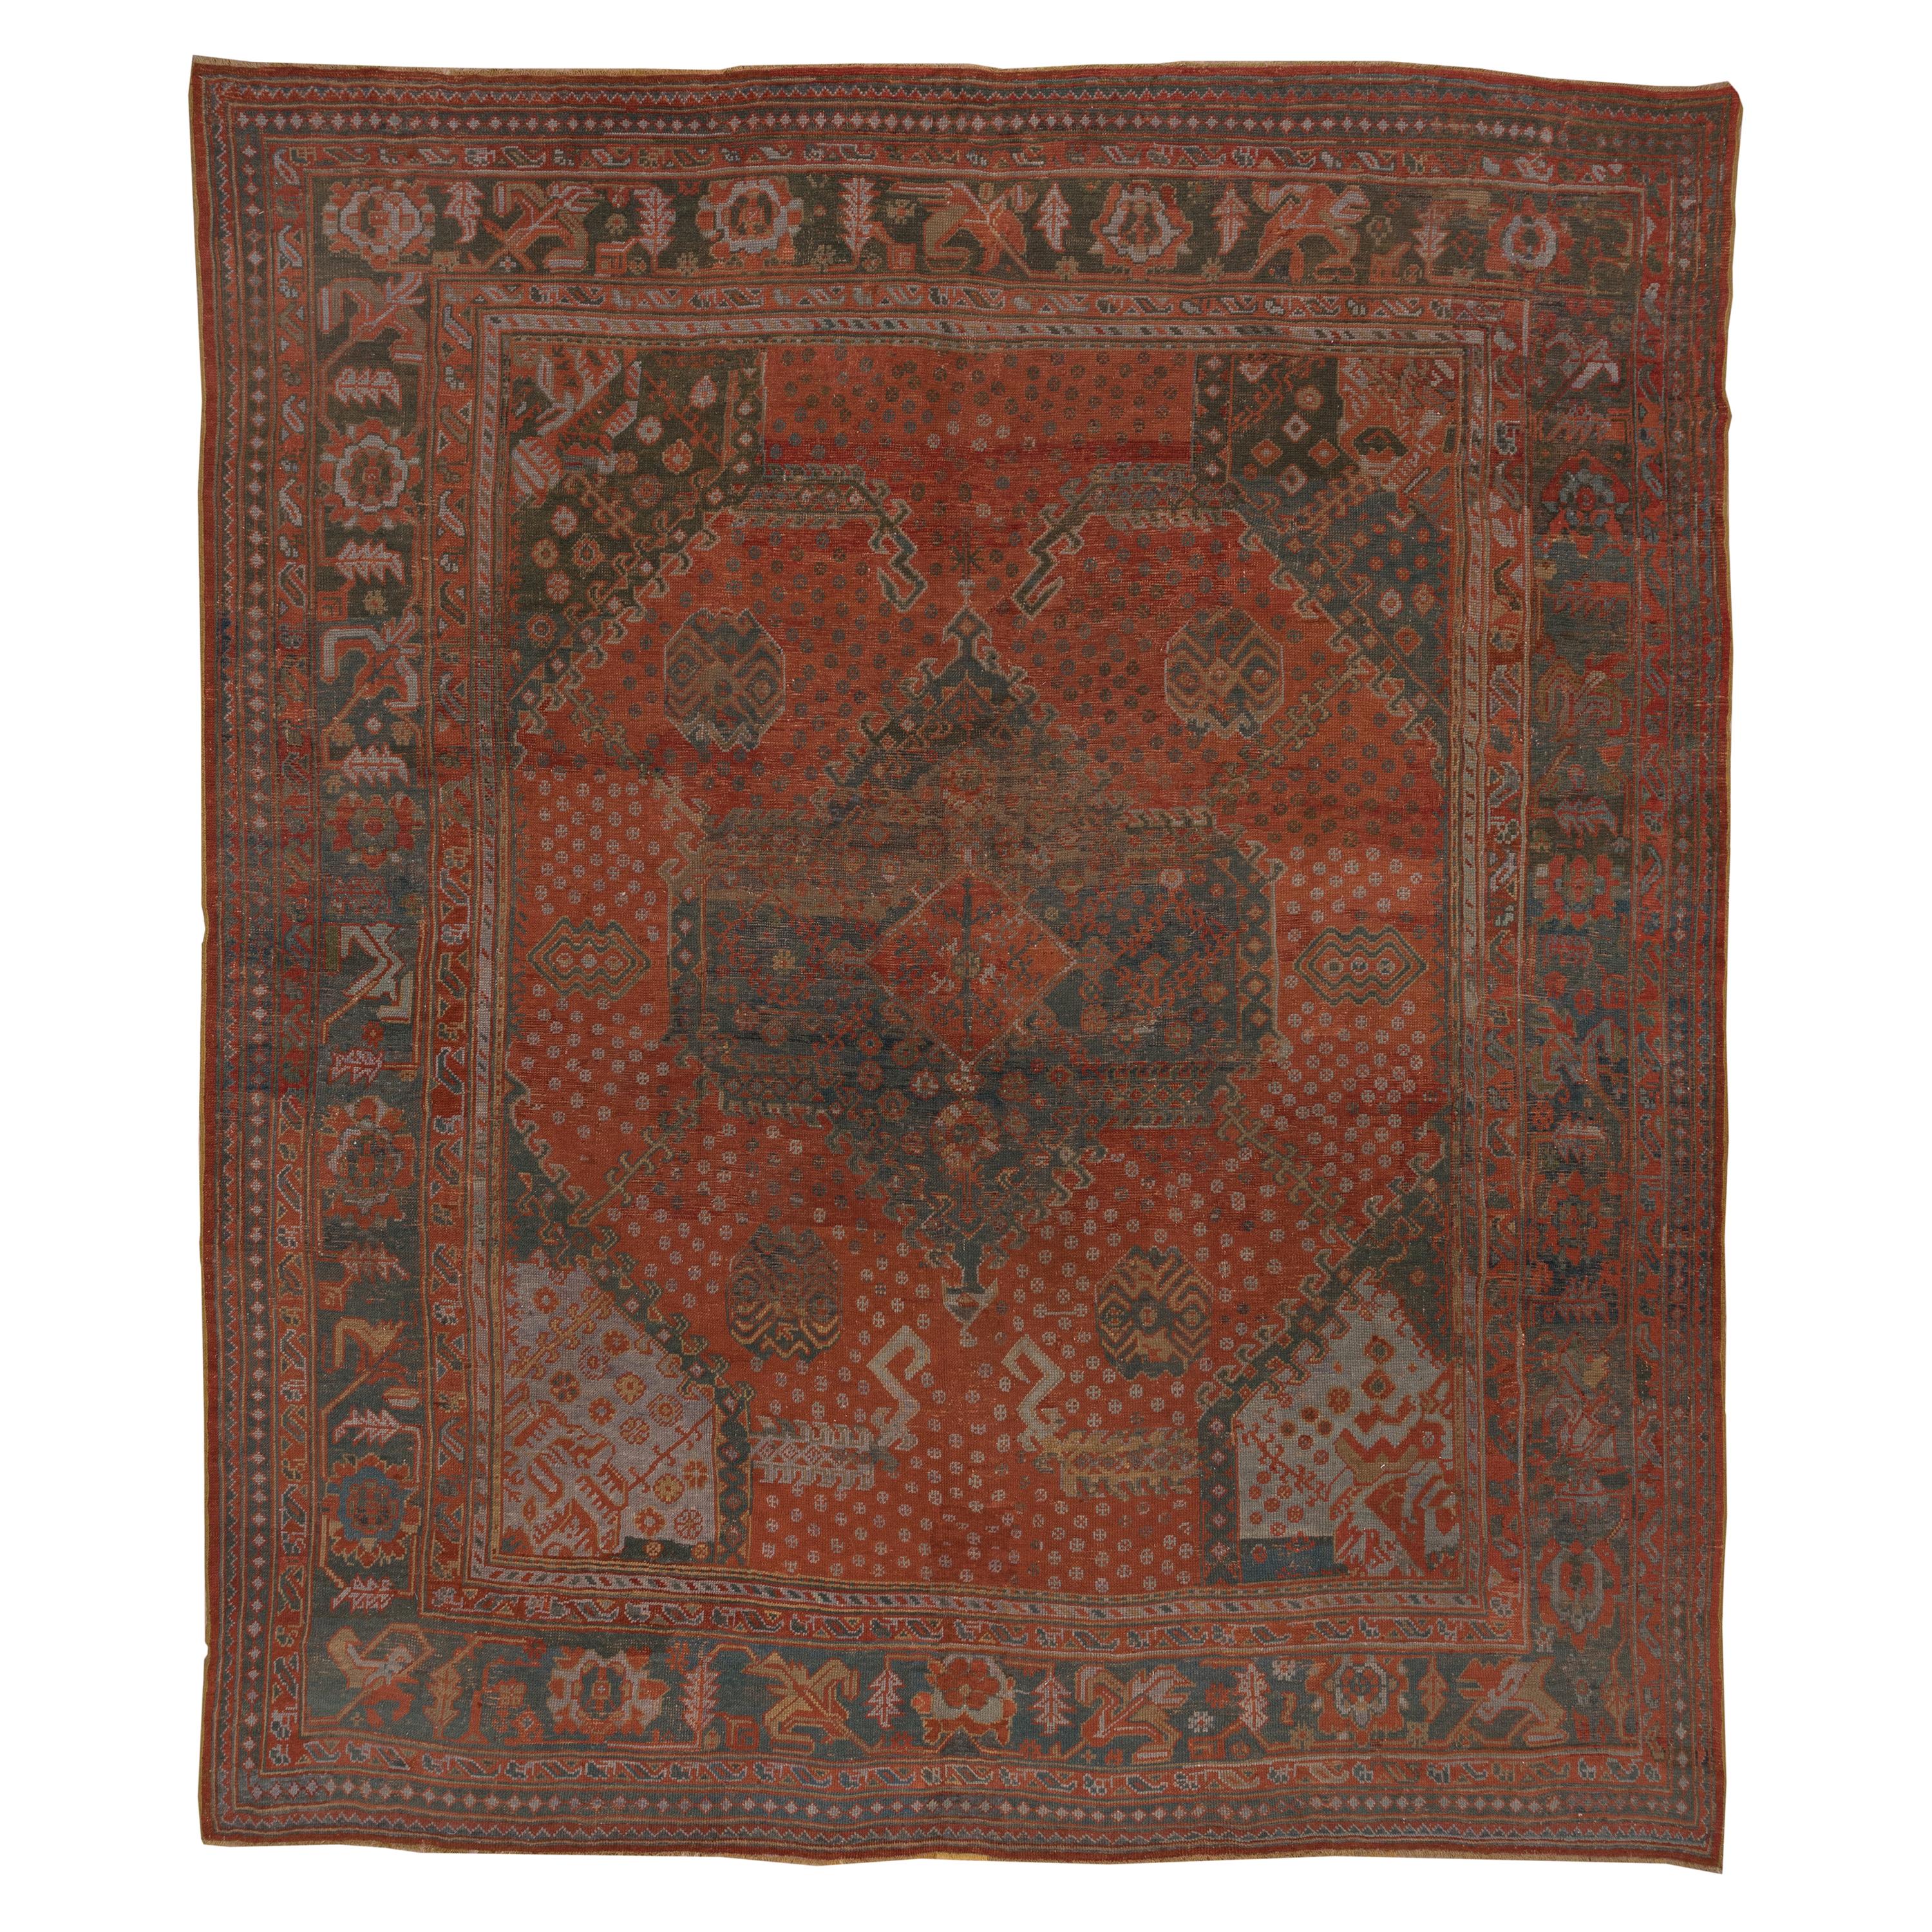 Antique Turkish Oushak Large Carpet, Orange & Teal Palette, Circa 1920s